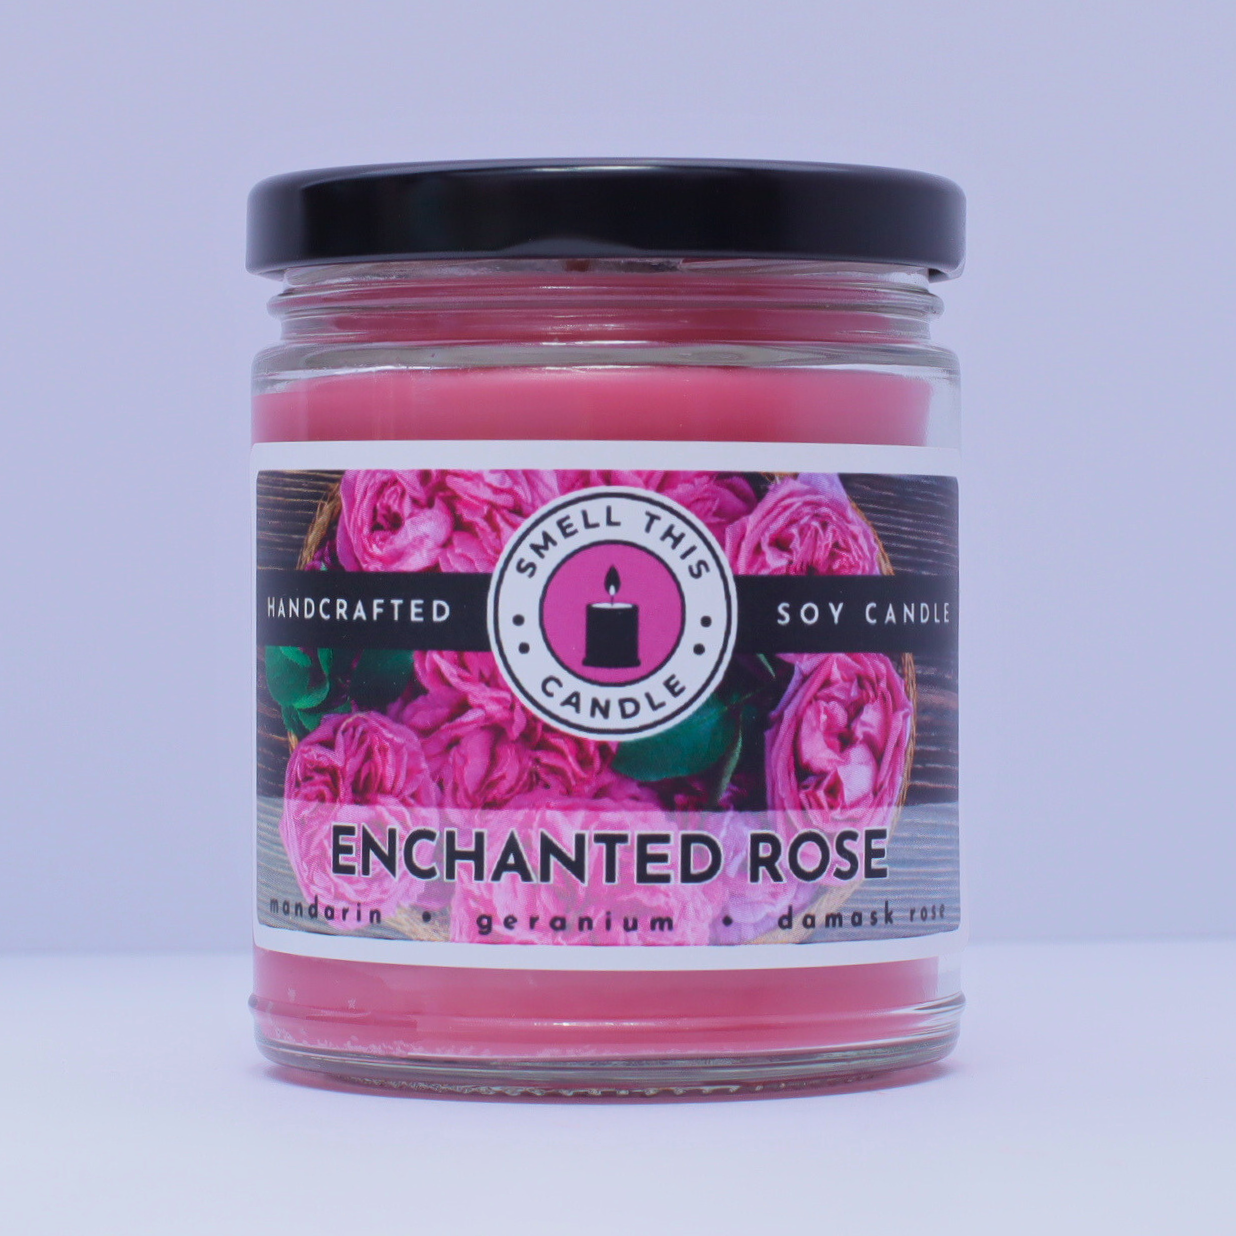 Enchanted Rose candle